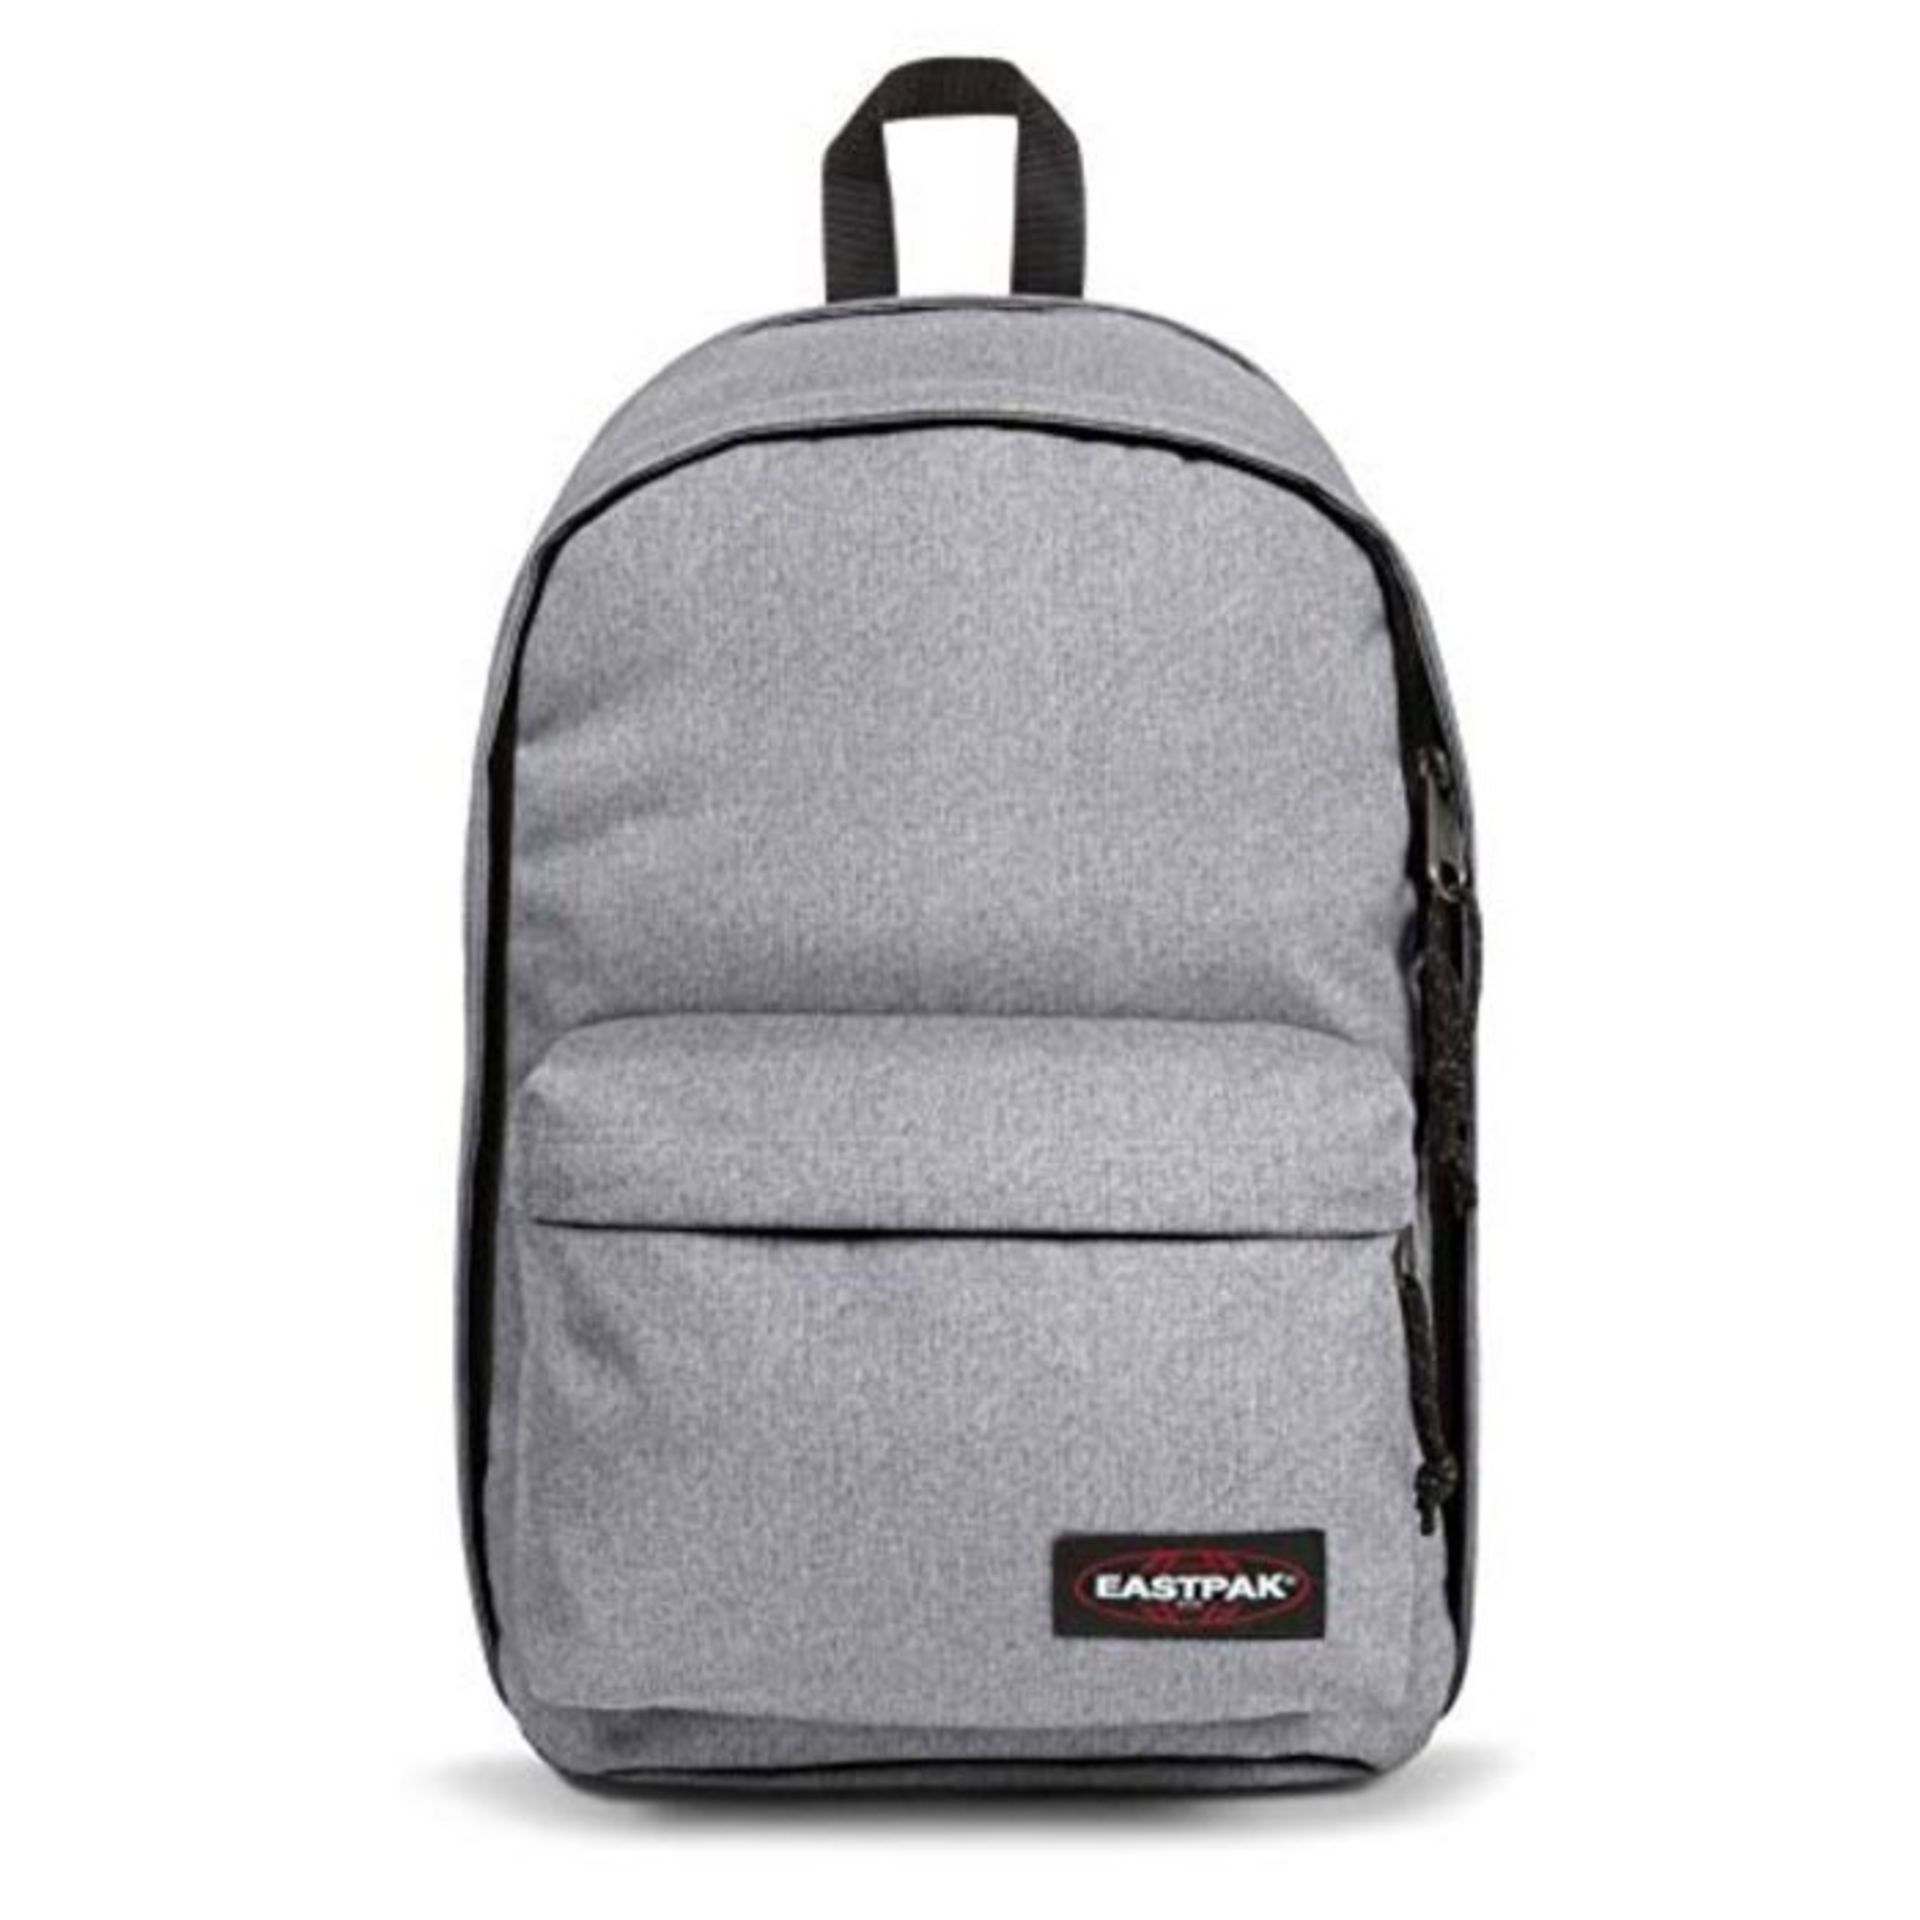 Eastpak Back To Work Backpack, 43 cm, 27 L, Sunday Grey